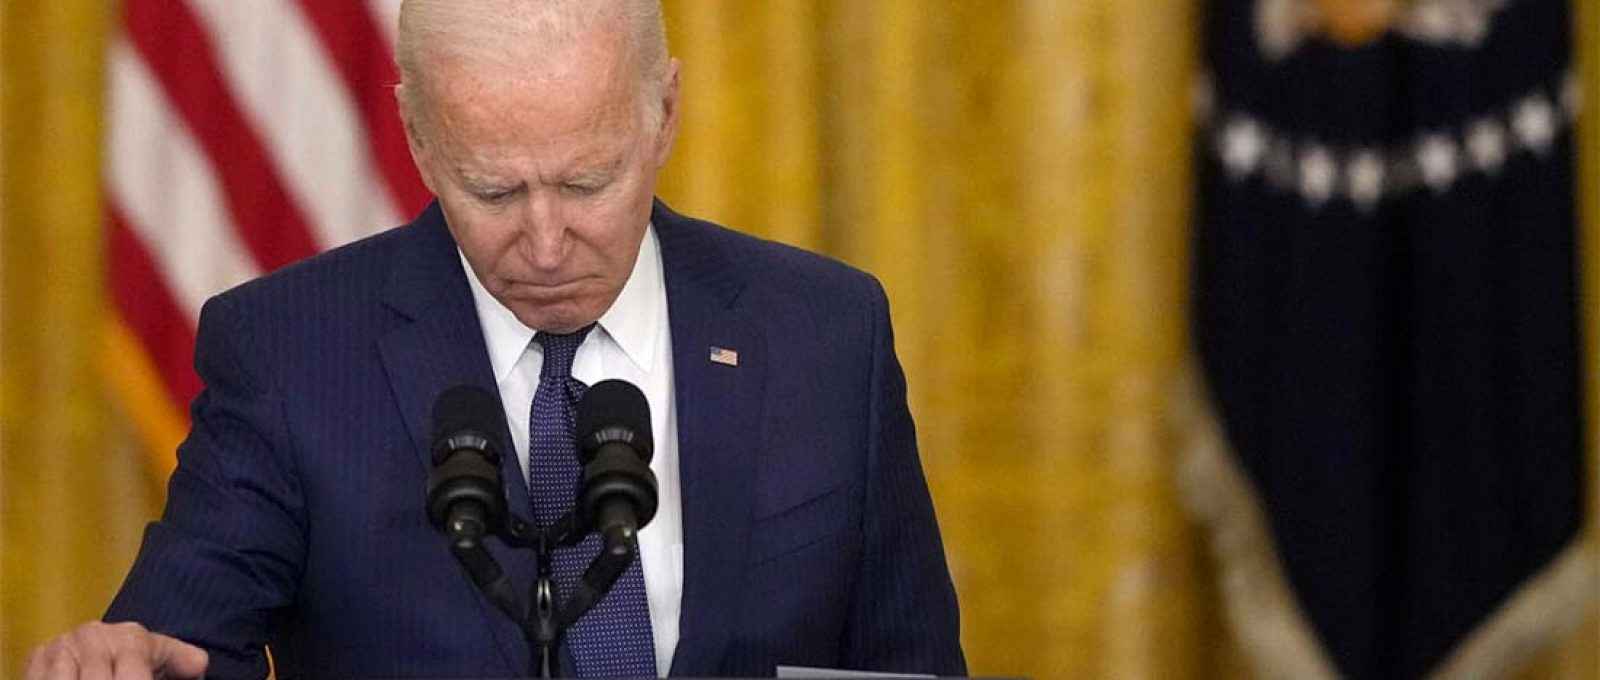 O presidente Joe Biden fala sobre a situação em Cabul, Afeganistão, sendo questionado por repórteres na Casa Branca, na quinta-feira 26 de agosto (Foto: Drew Angerer/Getty Images).